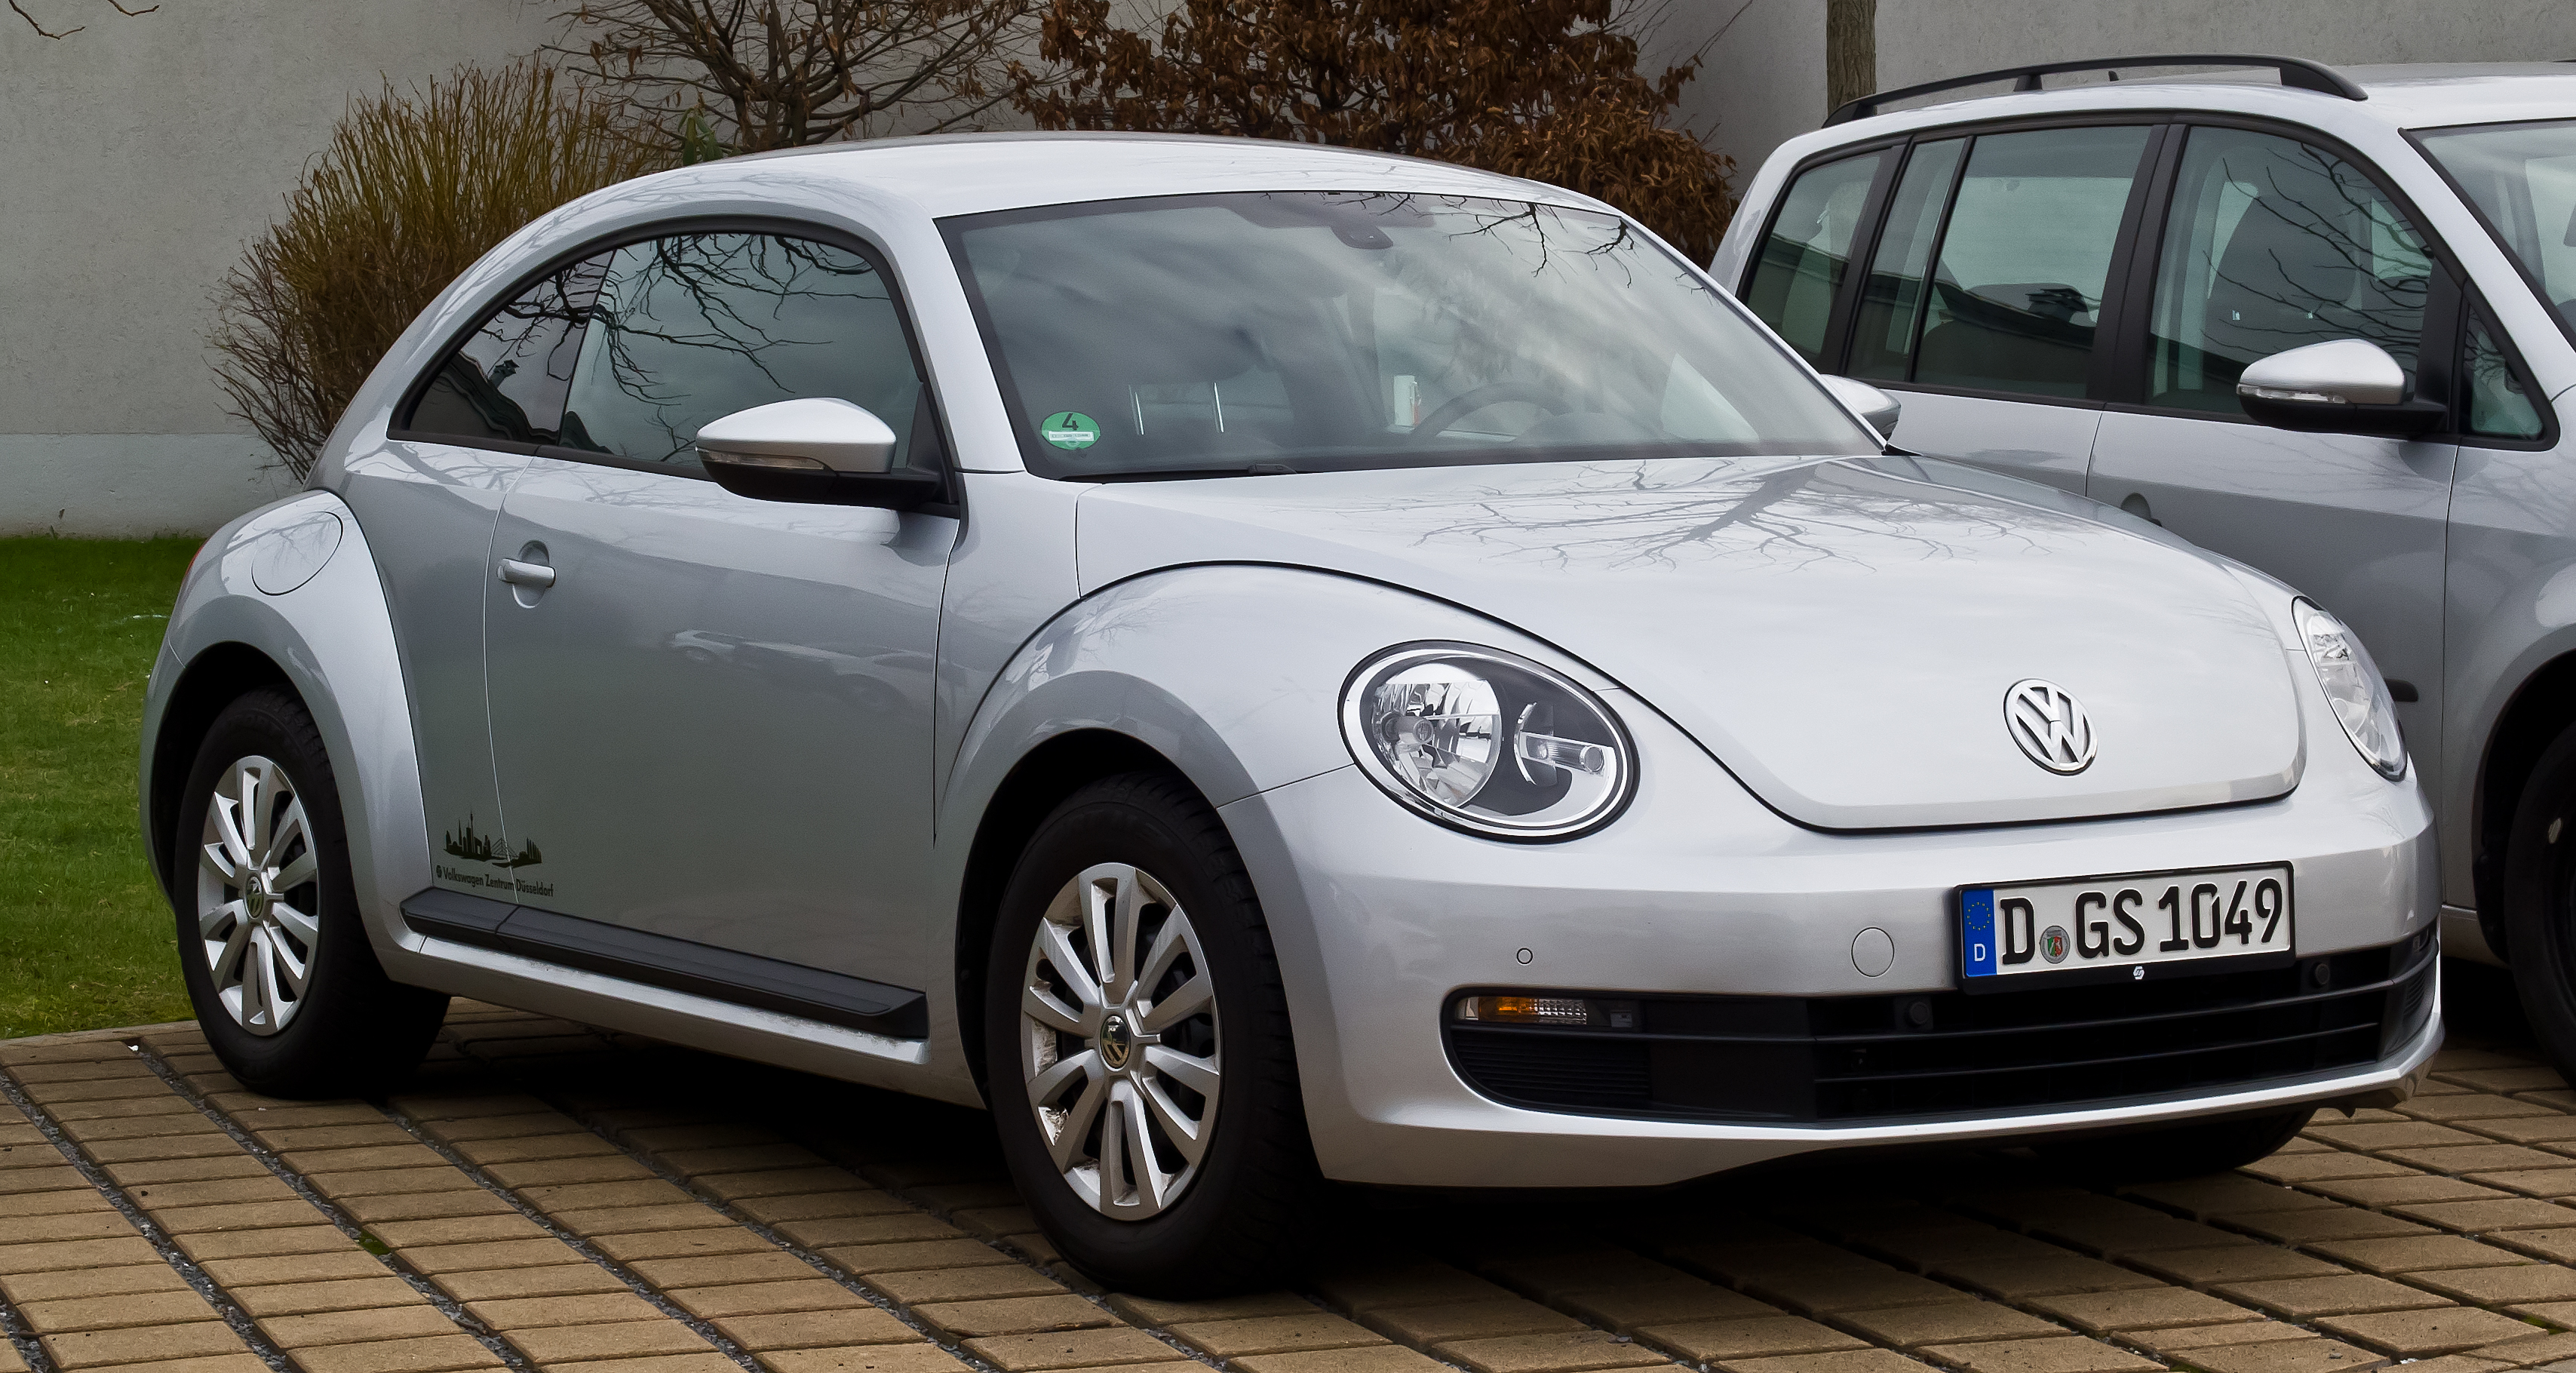 VW_Beetle_%E2%80%93_Frontansicht%2C_11._Februar_2013%2C_D%C3%BCsseldorf.jpg